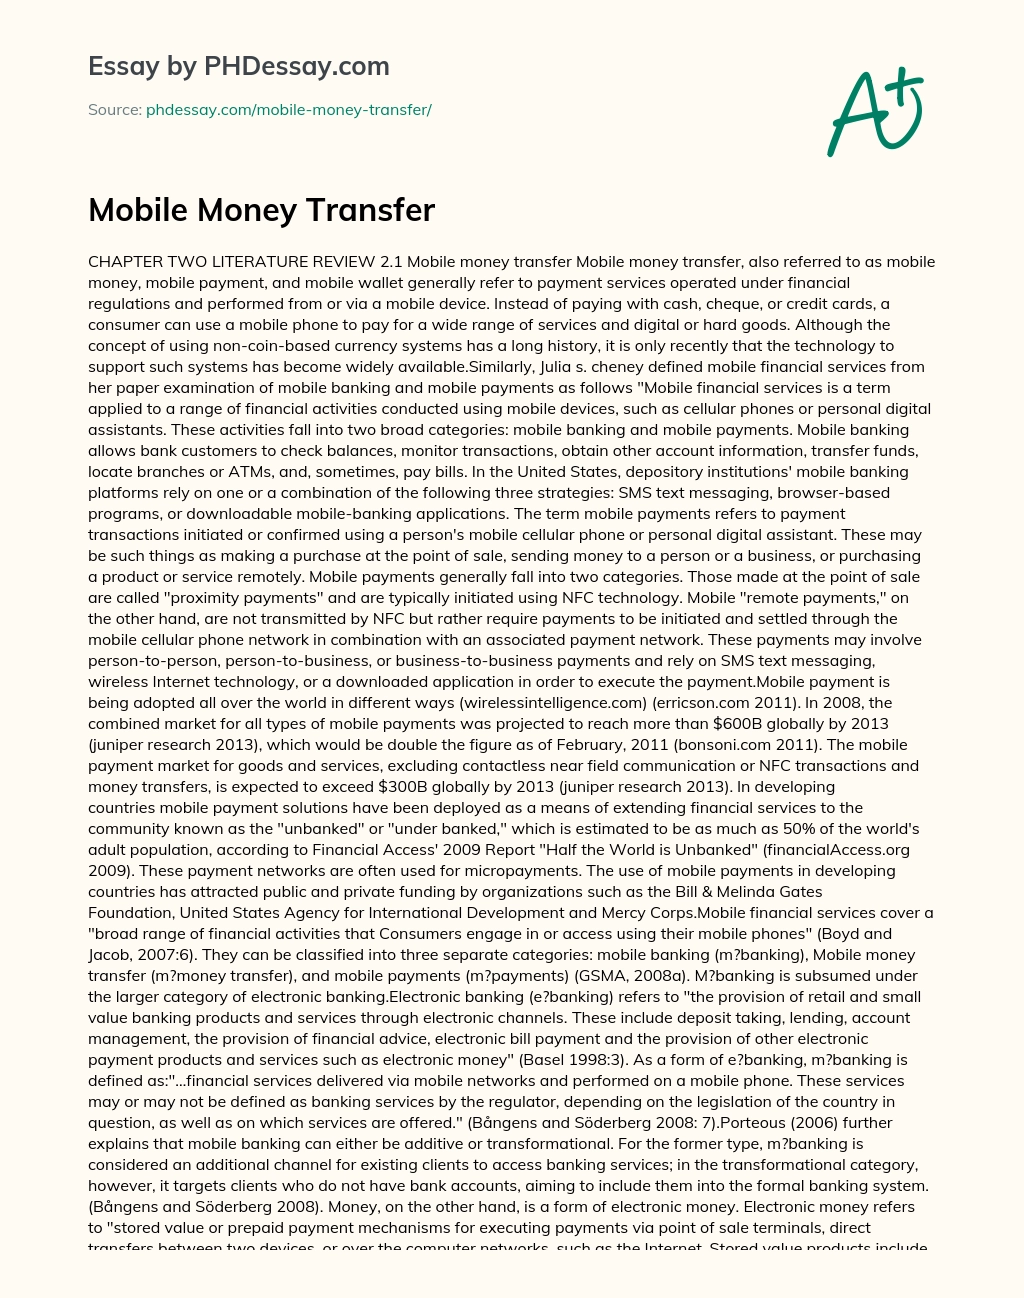 Mobile Money Transfer essay